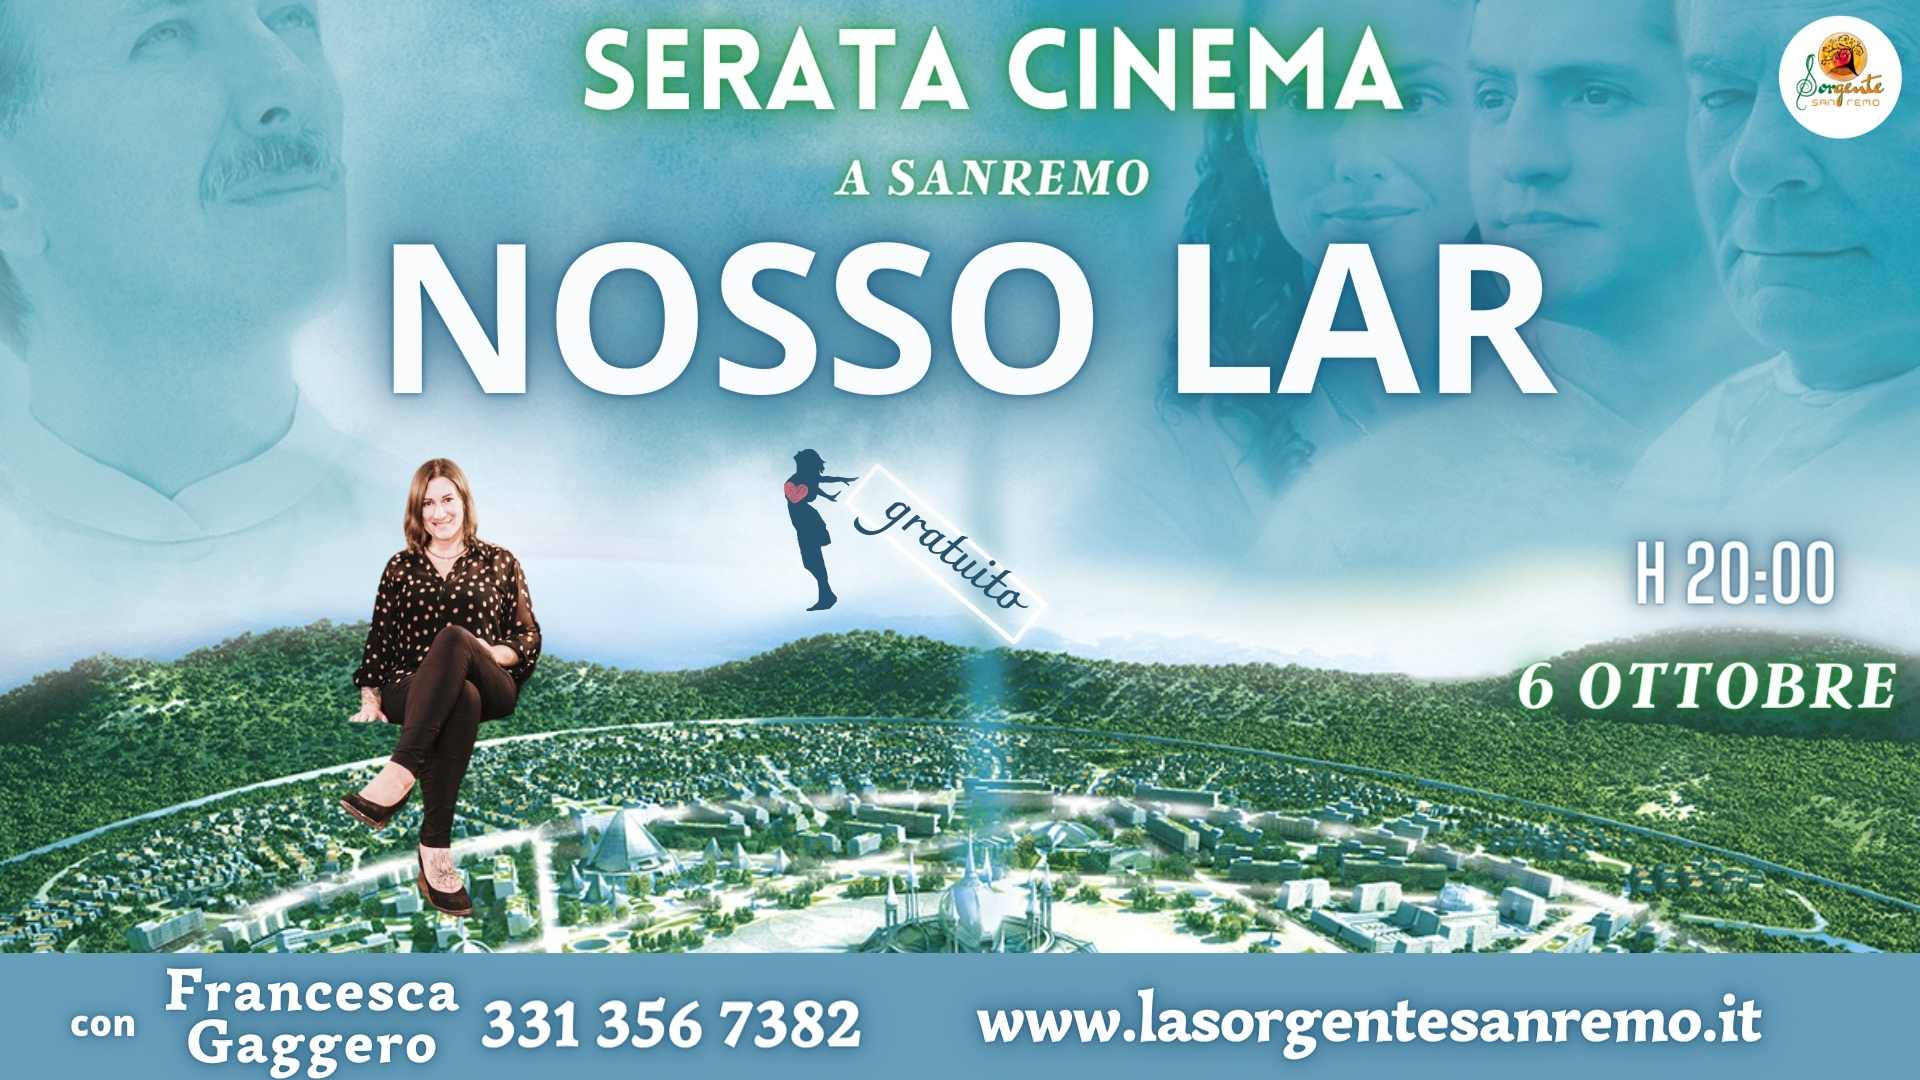 Serata Cinema con il film NOSSO LAR